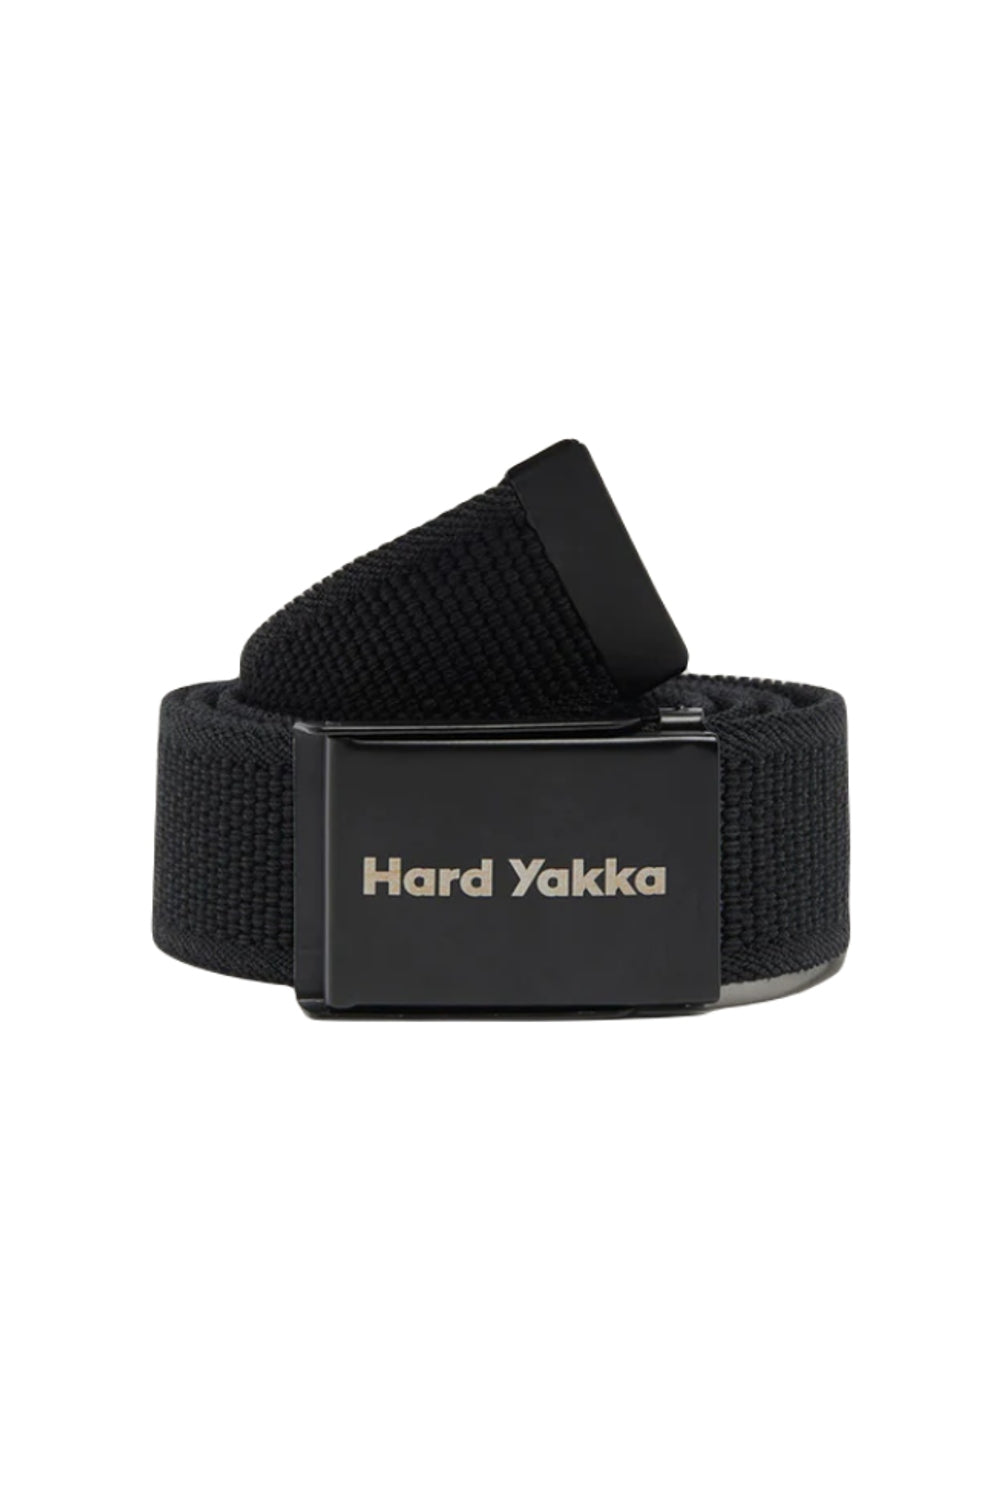 Hard Yakka Stretch Webbing Belt in Black